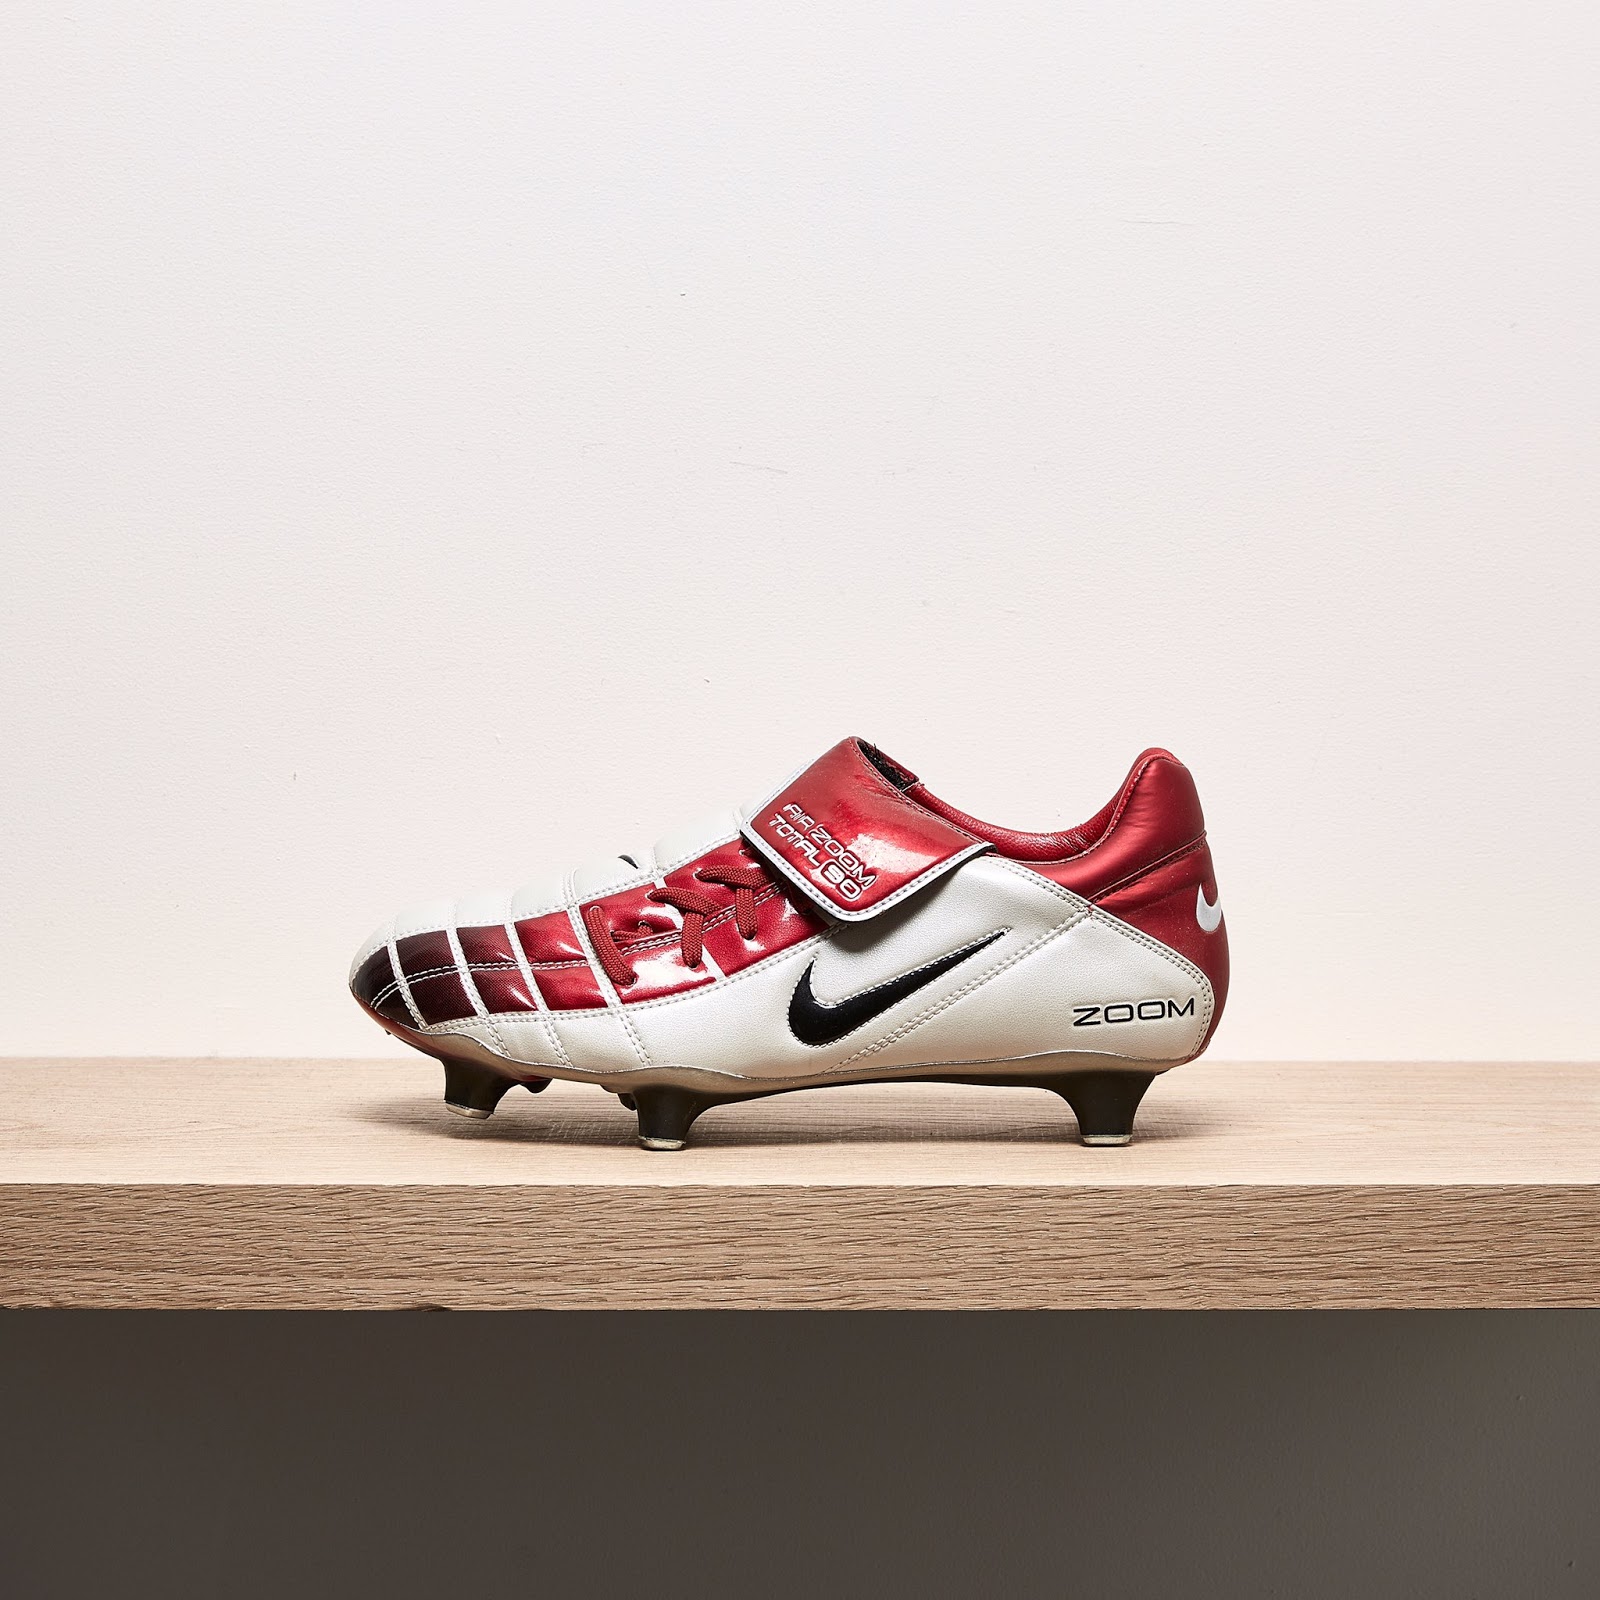 maníaco alcanzar presupuesto Closer Look: Nike Air Zoom Total 90 II 2002 Football Boots - Footy Headlines